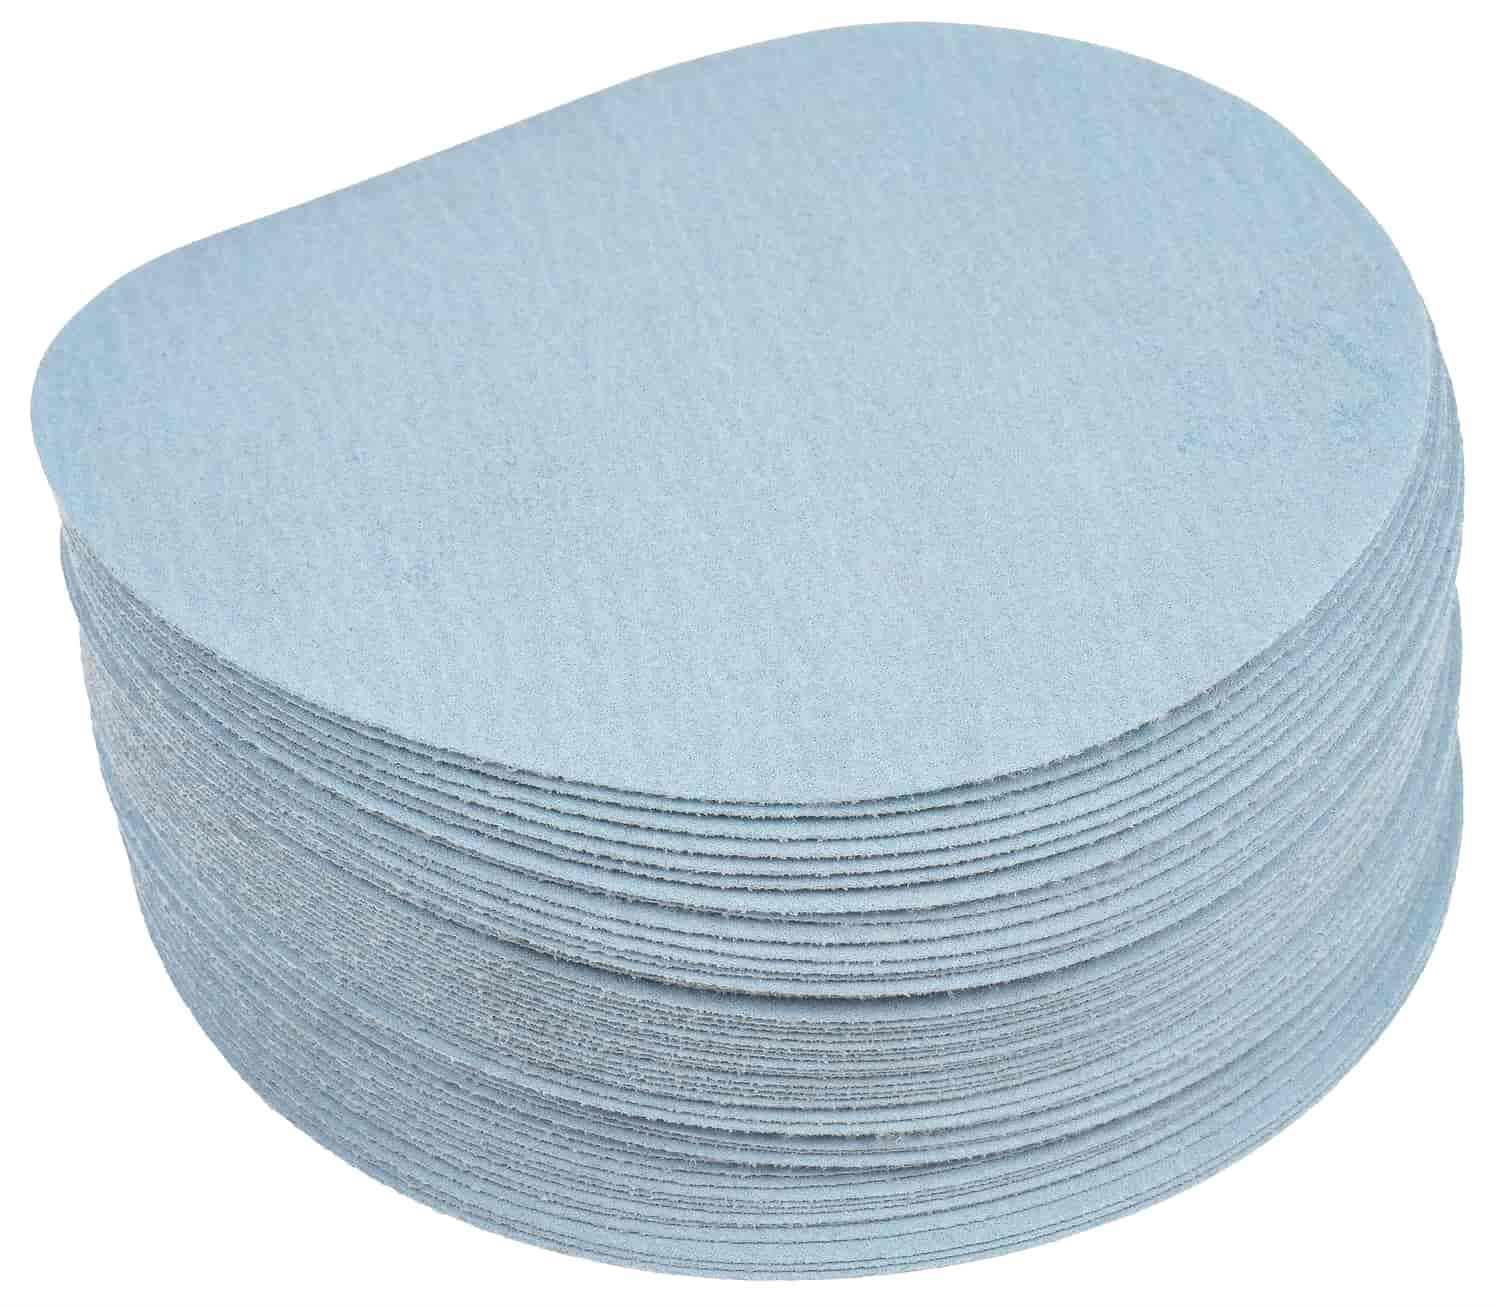 Automotive Sandpaper Discs [220 Grit]